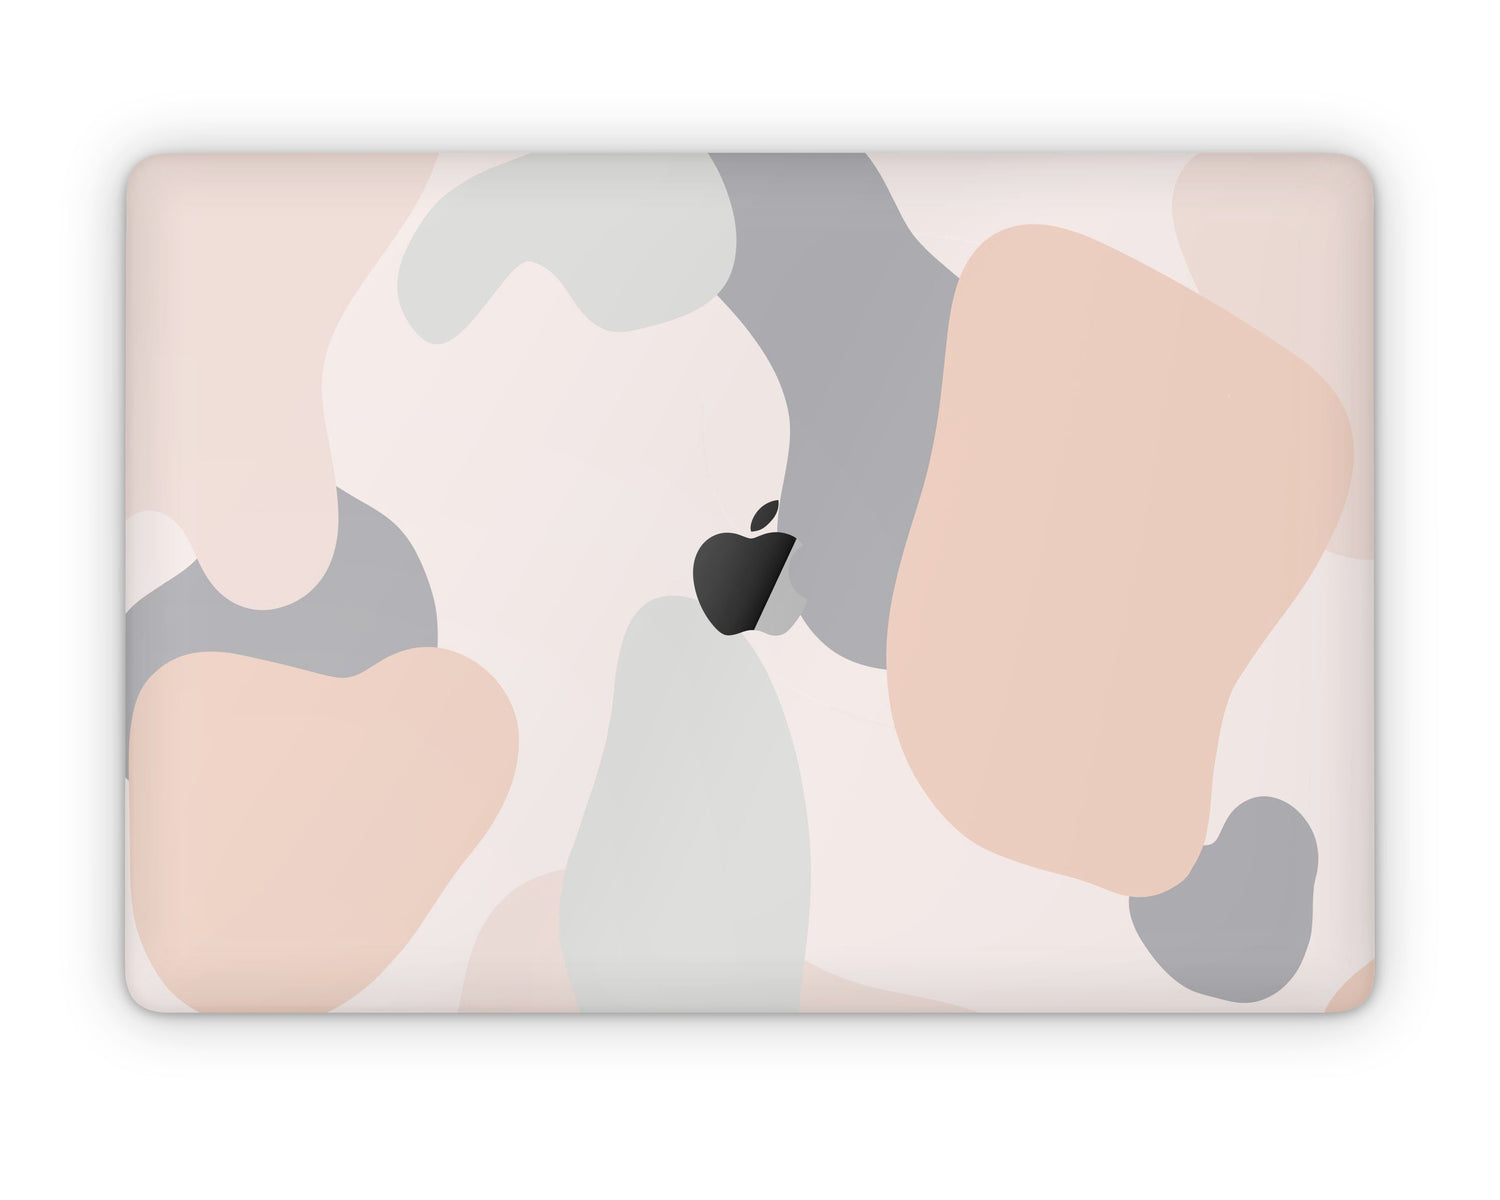 Lux Skins MacBook Pastel Camo Beige CrÃƒÆ’Ã†â€™Ãƒâ€ Ã¢â‚¬â„¢ÃƒÆ’Ã¢â‚¬Â ÃƒÂ¢Ã¢â€šÂ¬Ã¢â€žÂ¢ÃƒÆ’Ã¢â‚¬Å¡Ã‚Â¨me Pro 13" (A2251/2289) Skins - Pattern Abstract Skin